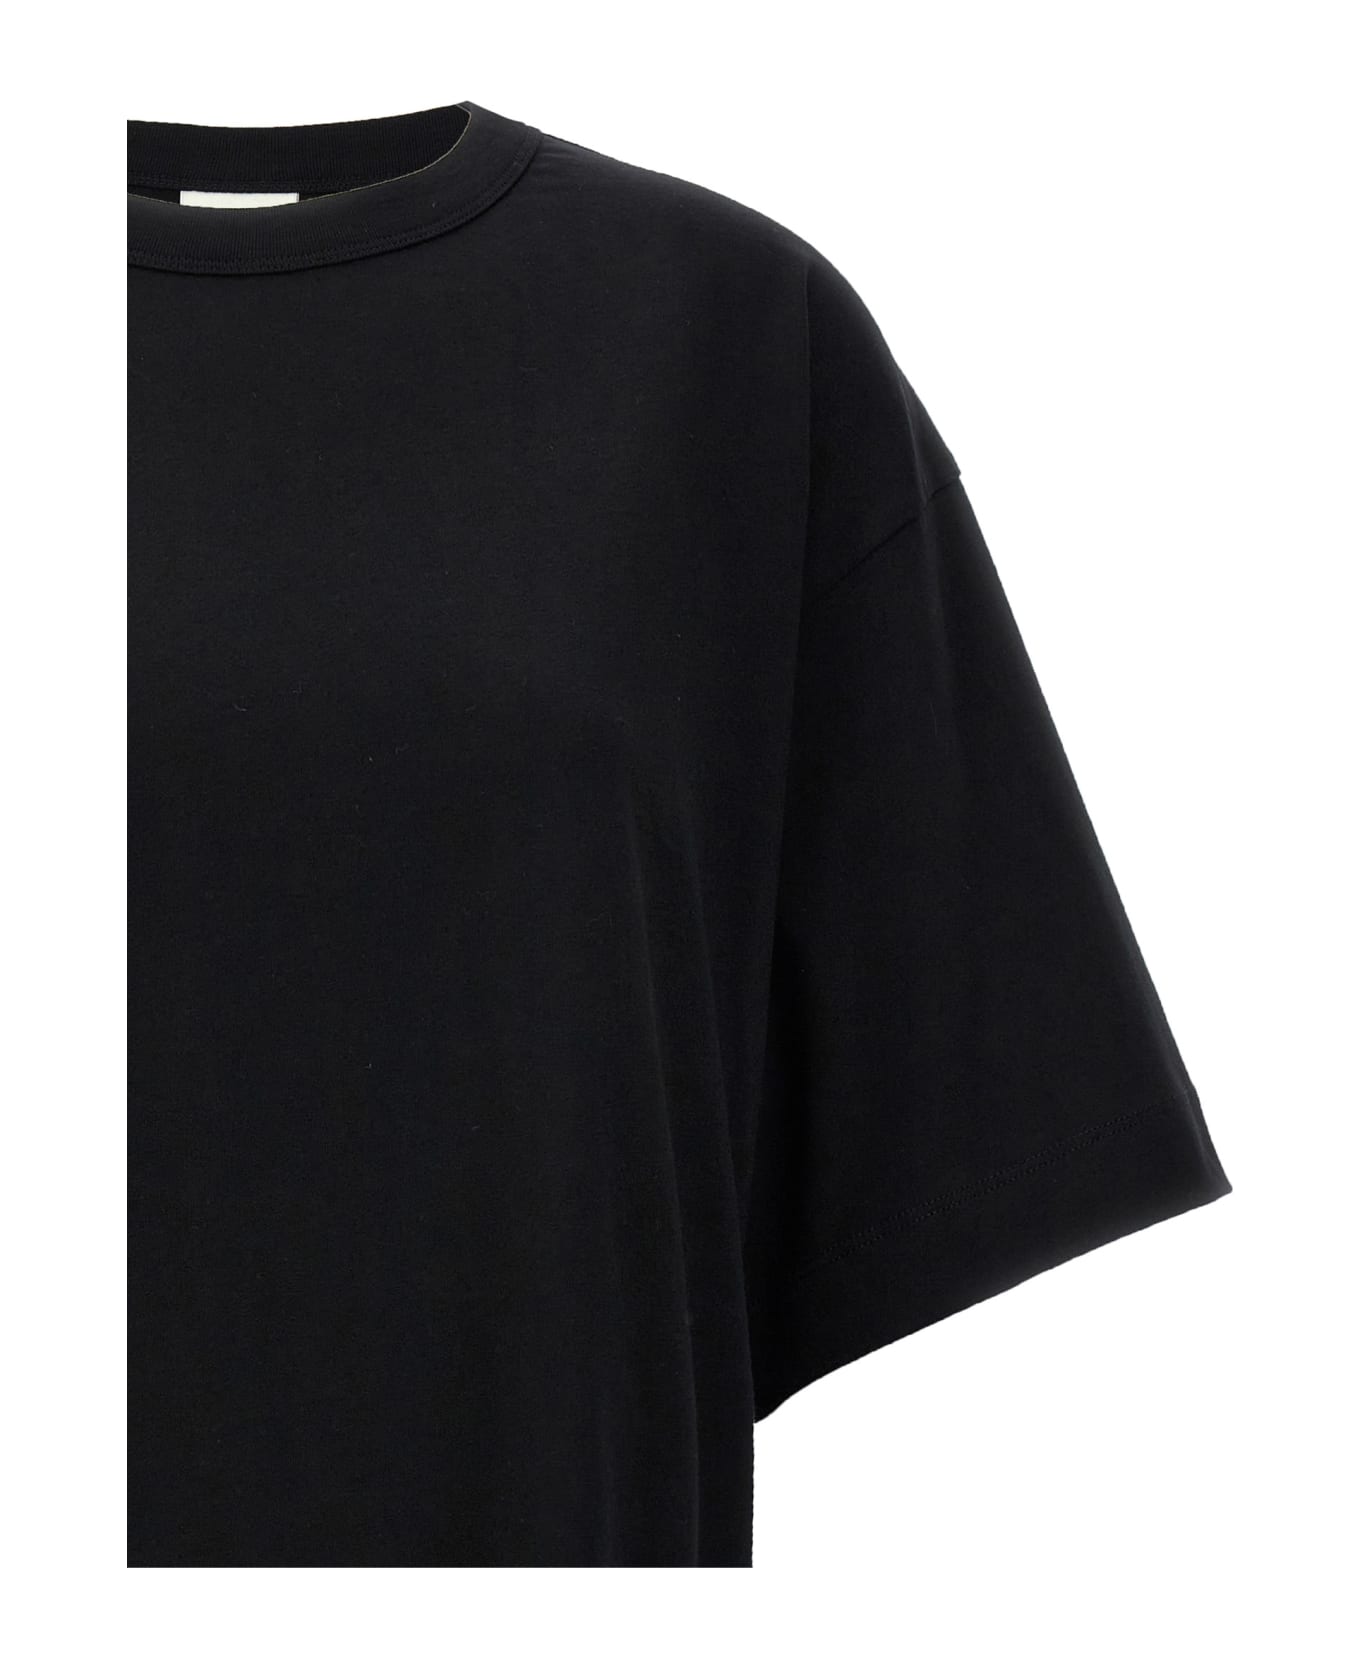 Dries Van Noten 'hegels' T-shirt - Black